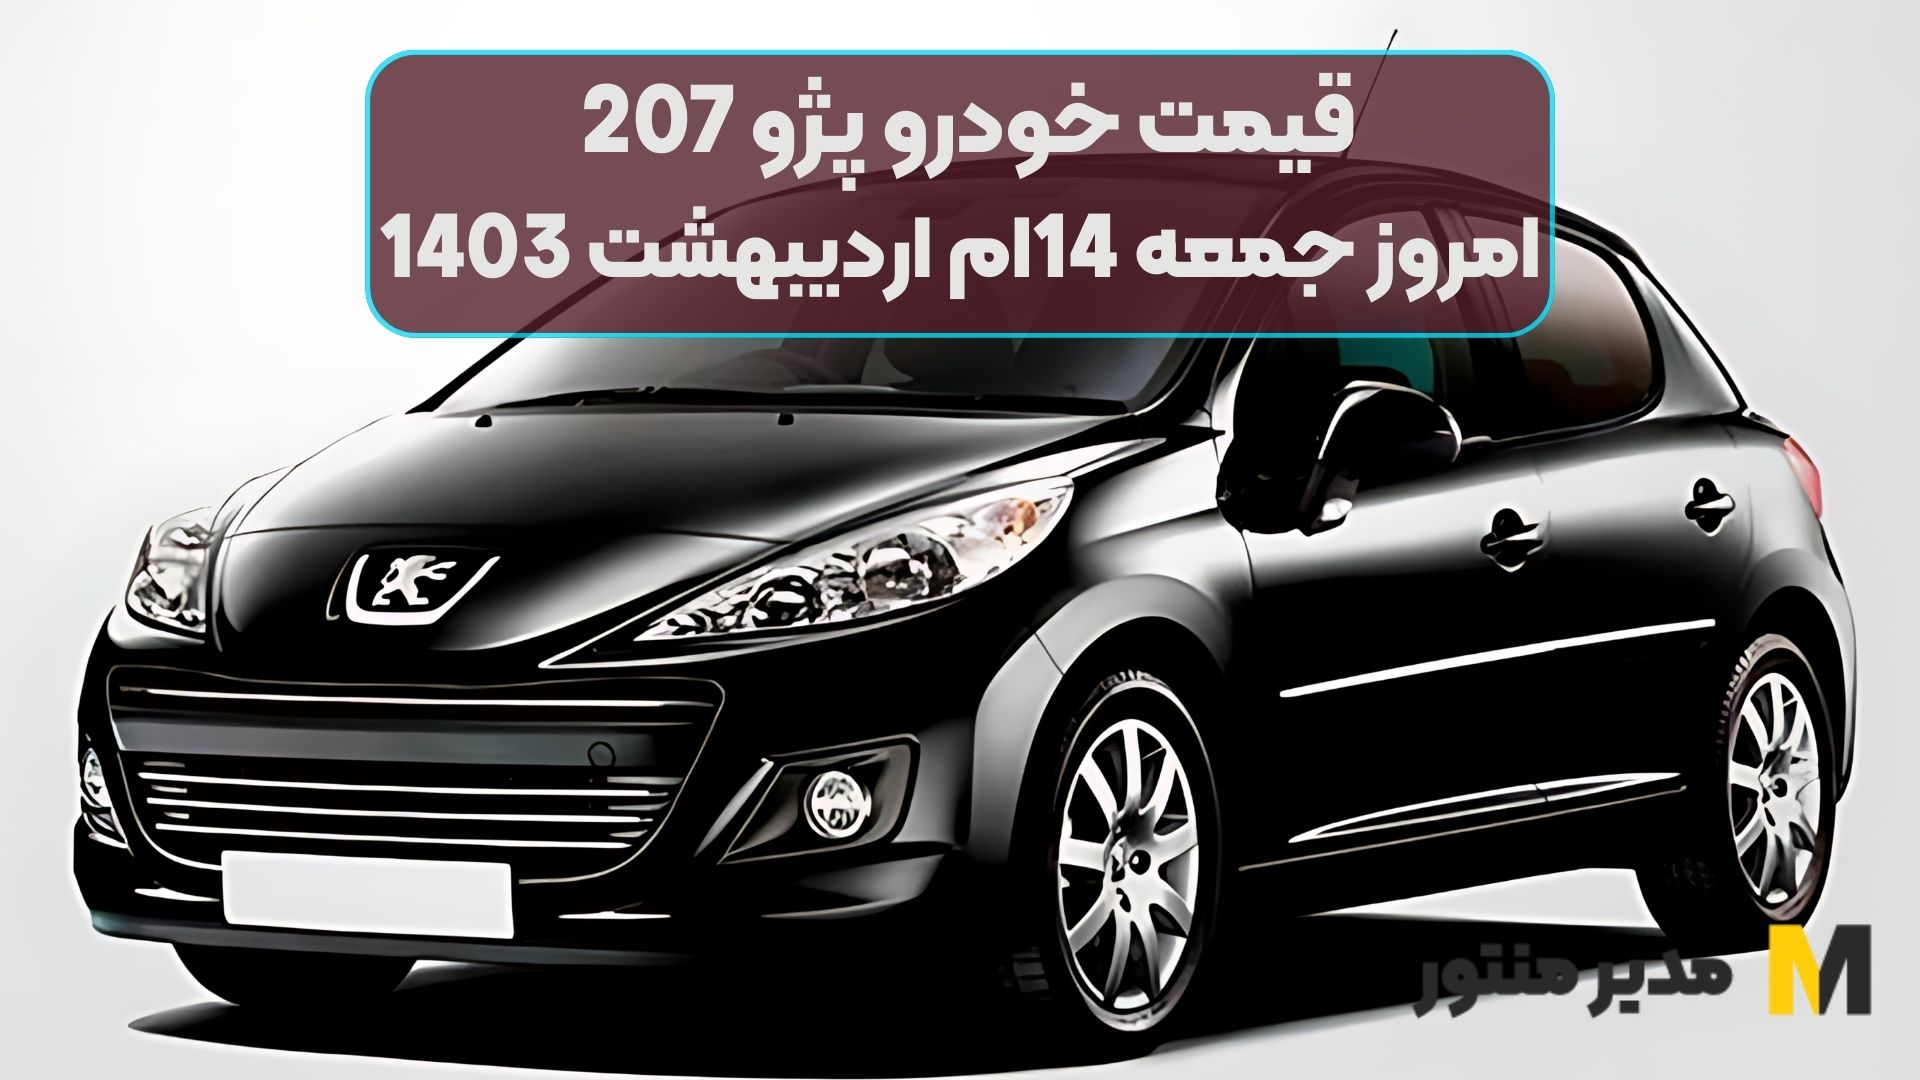 قیمت خودرو پژو 207 امروز جمعه 14ام اردیبهشت 1403